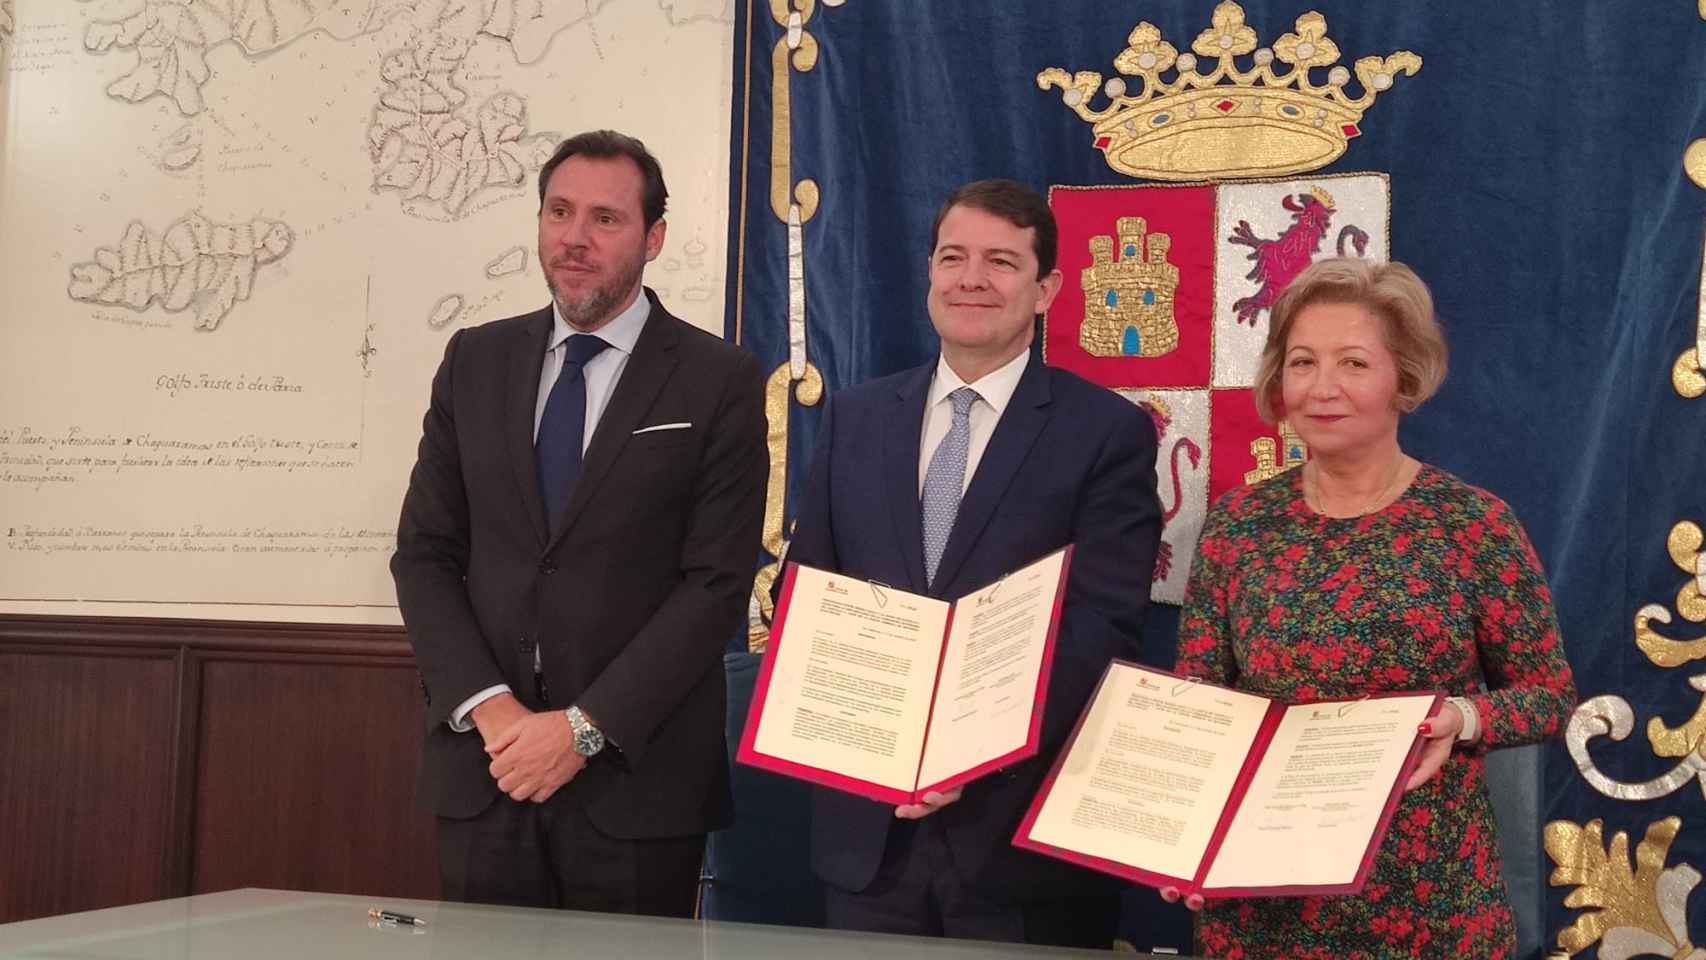 El presidente de la Junta de Castilla y León, Alfonso Fernández Mañueco; el alcalde de Valladolid, Óscar Puente, y la empresa InoBat, firman un protocolo y una declaración de intenciones respectivamente